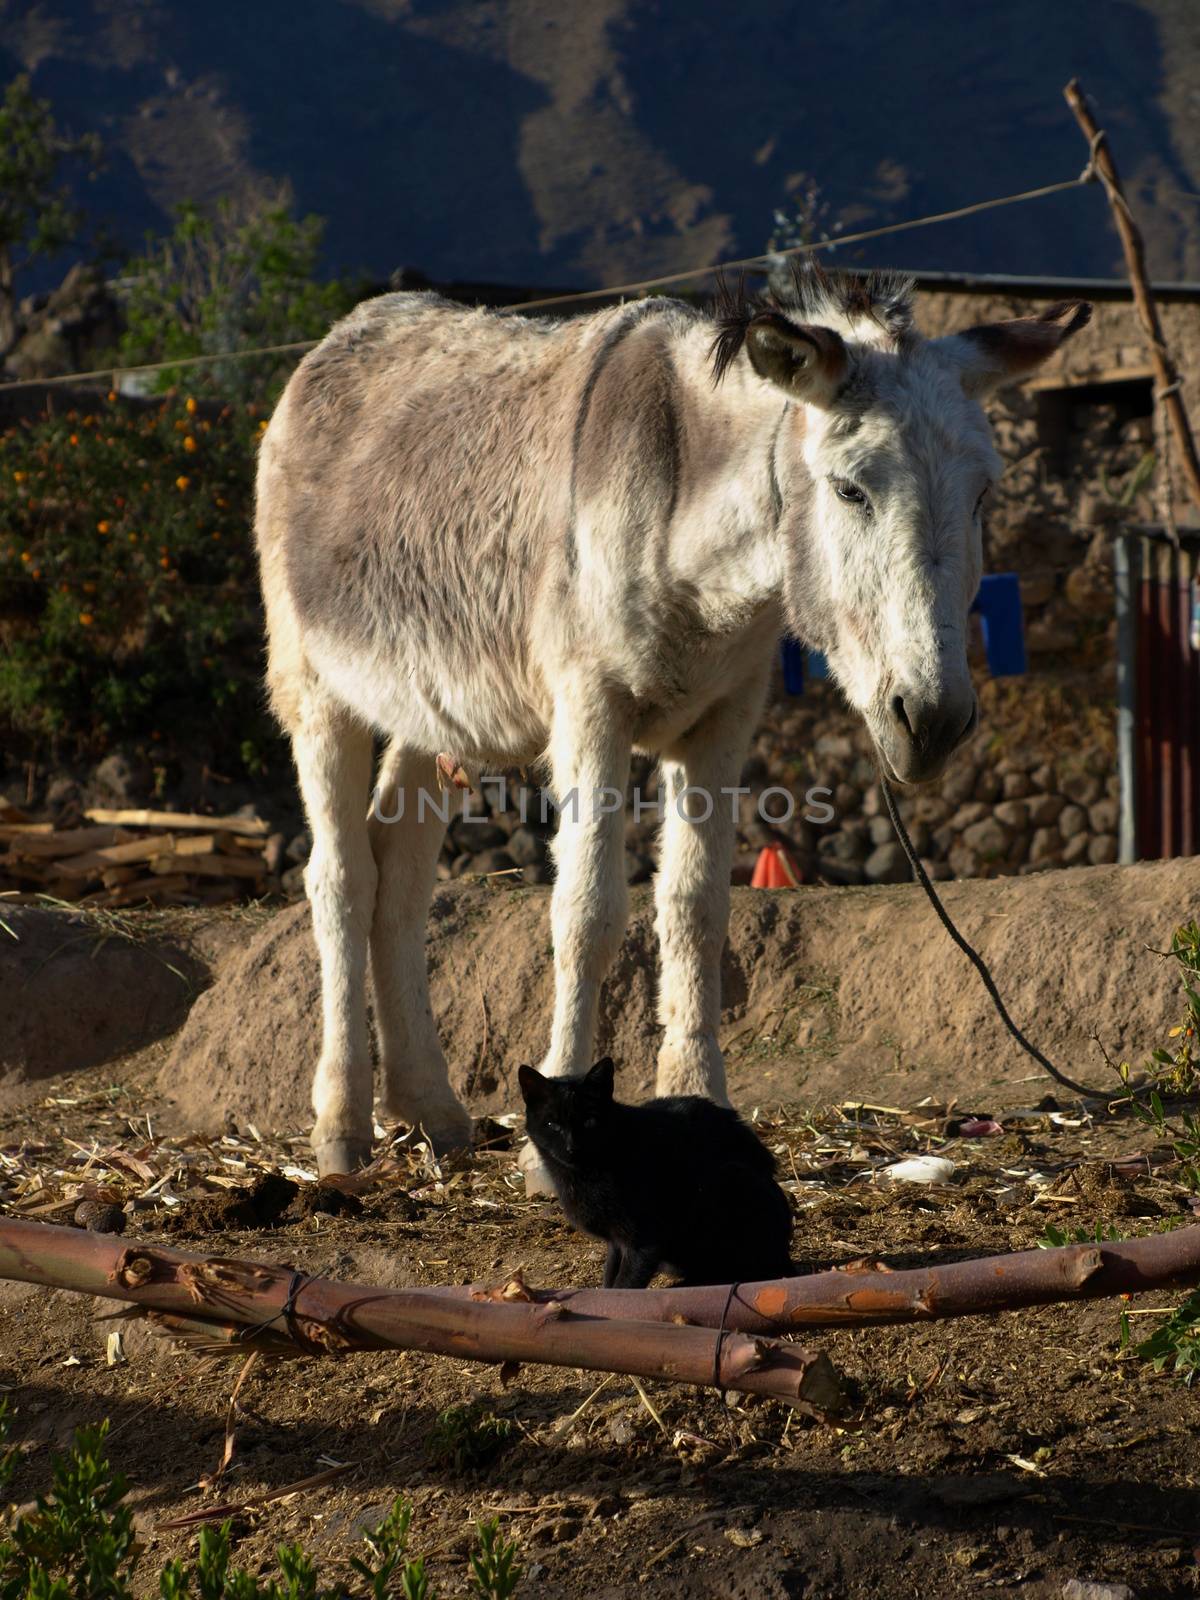 White donkey and black cat (Cabanaconde, Peru)